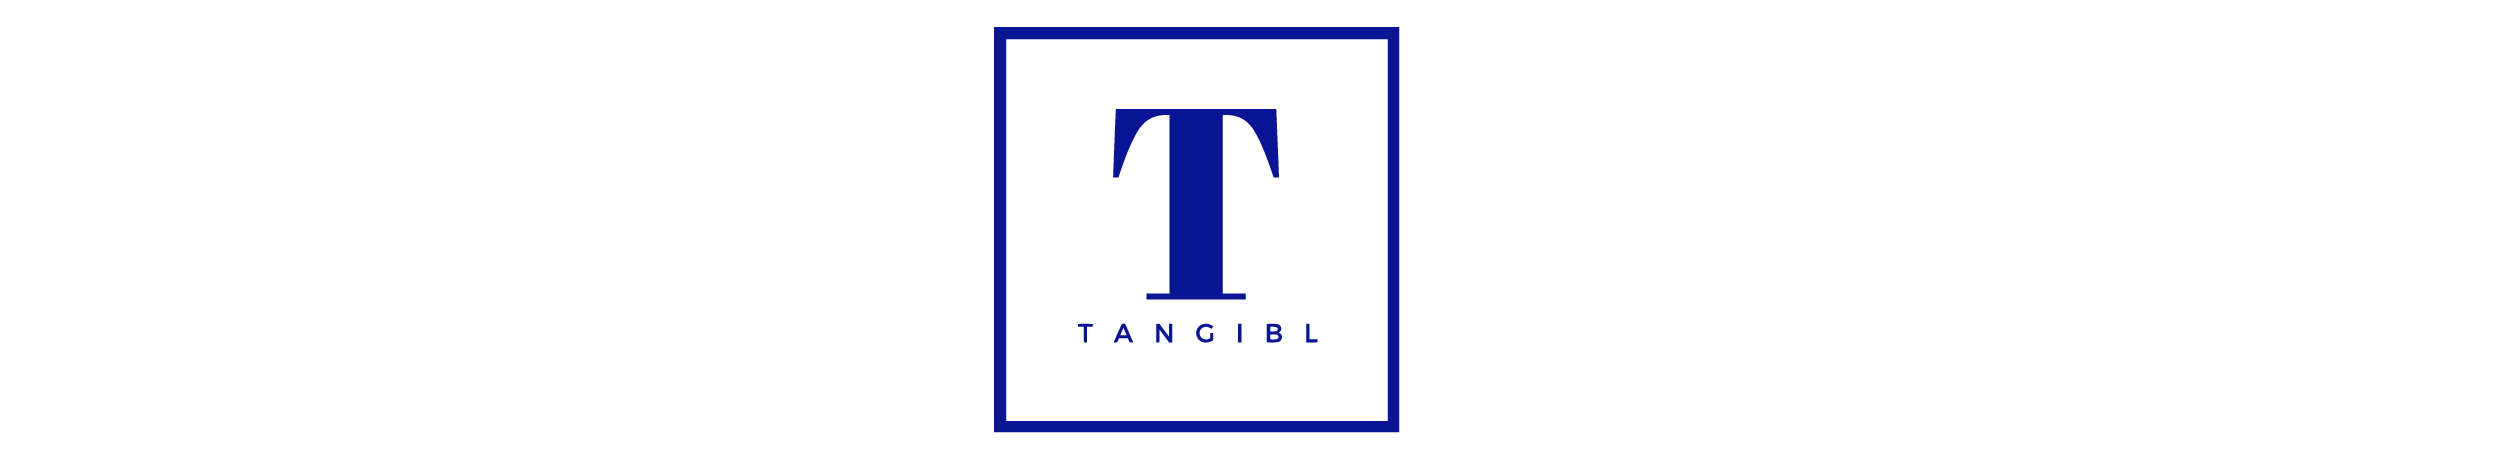 Tangibl